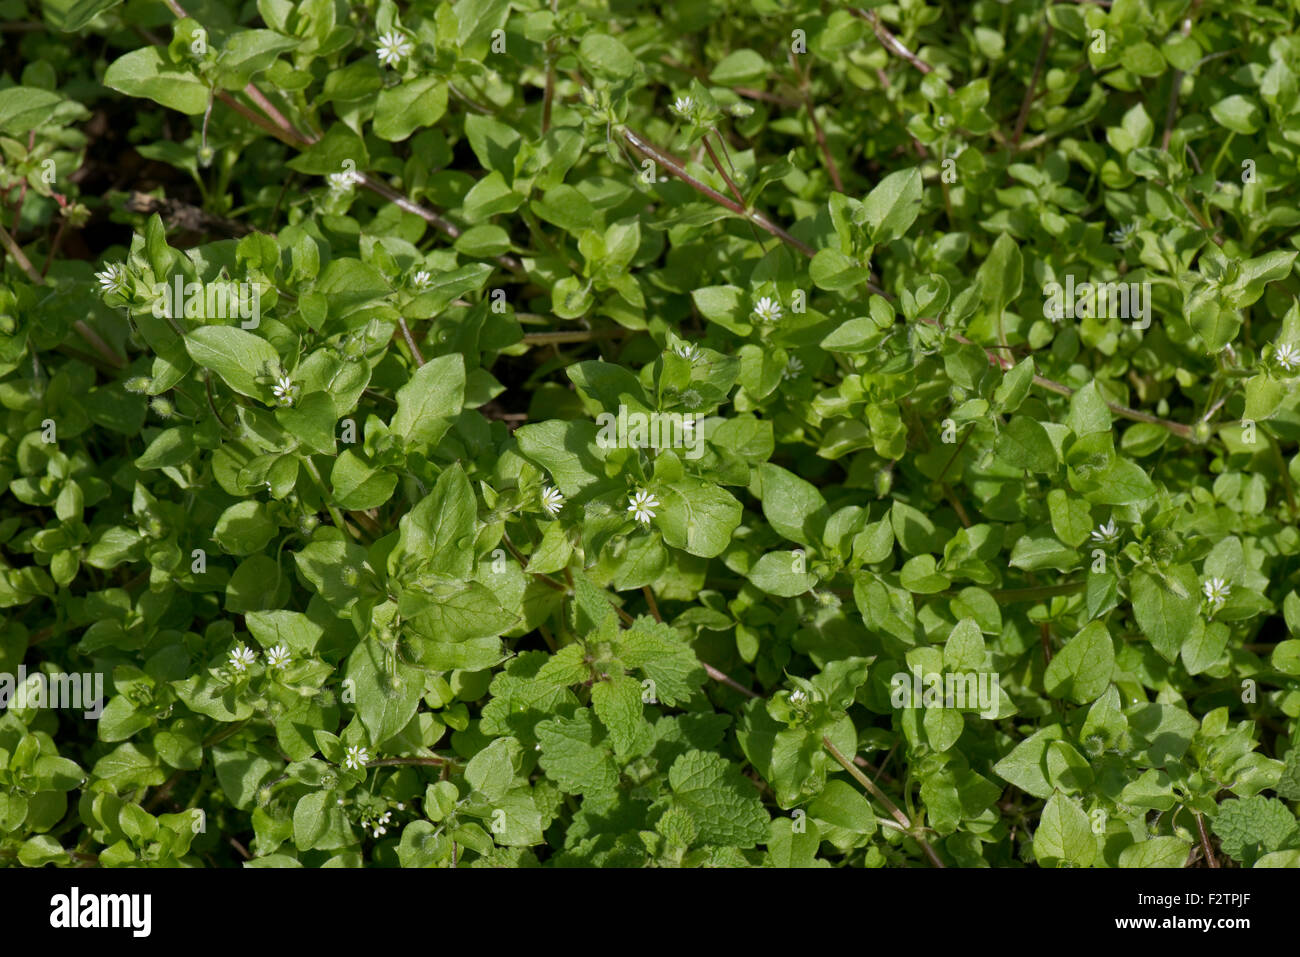 Le mouron des oiseaux, Stellaria media, petites fleurs blanches et vert des feuilles d'une herbe annuelle de terres arables, Berkshire, Août Banque D'Images